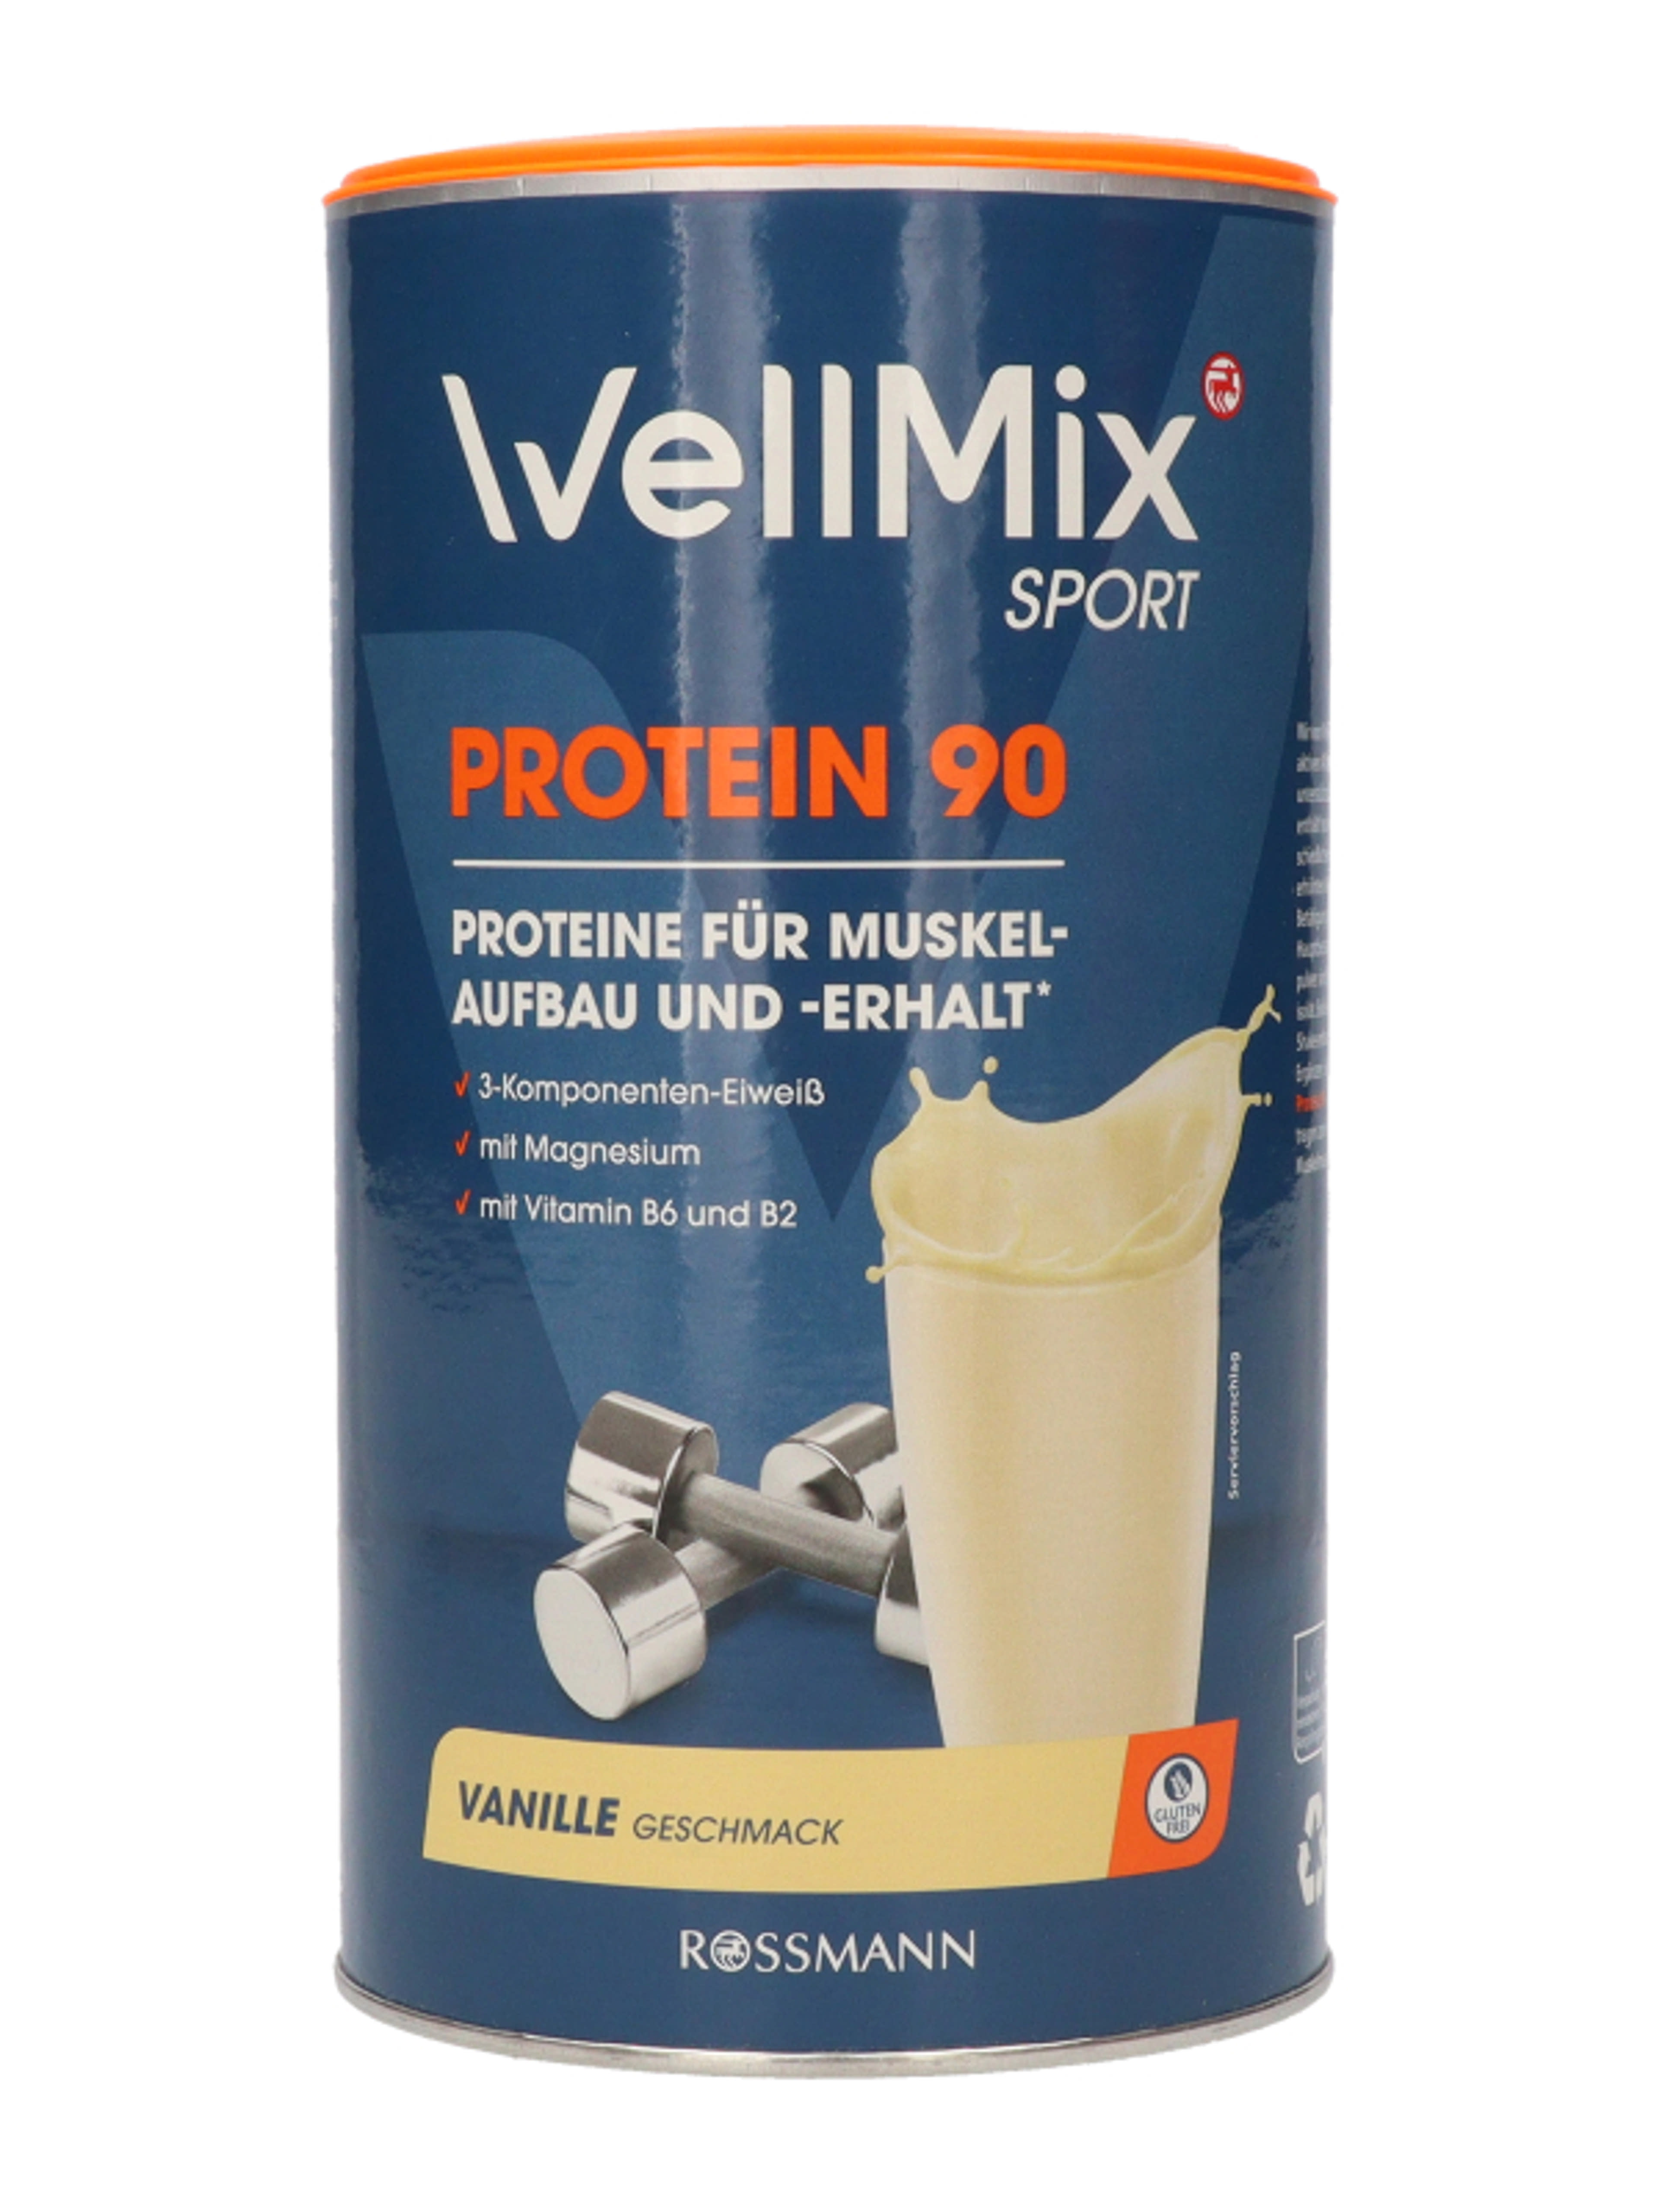 Well Mix Protein 90 italpor vanillia - 350 g-4